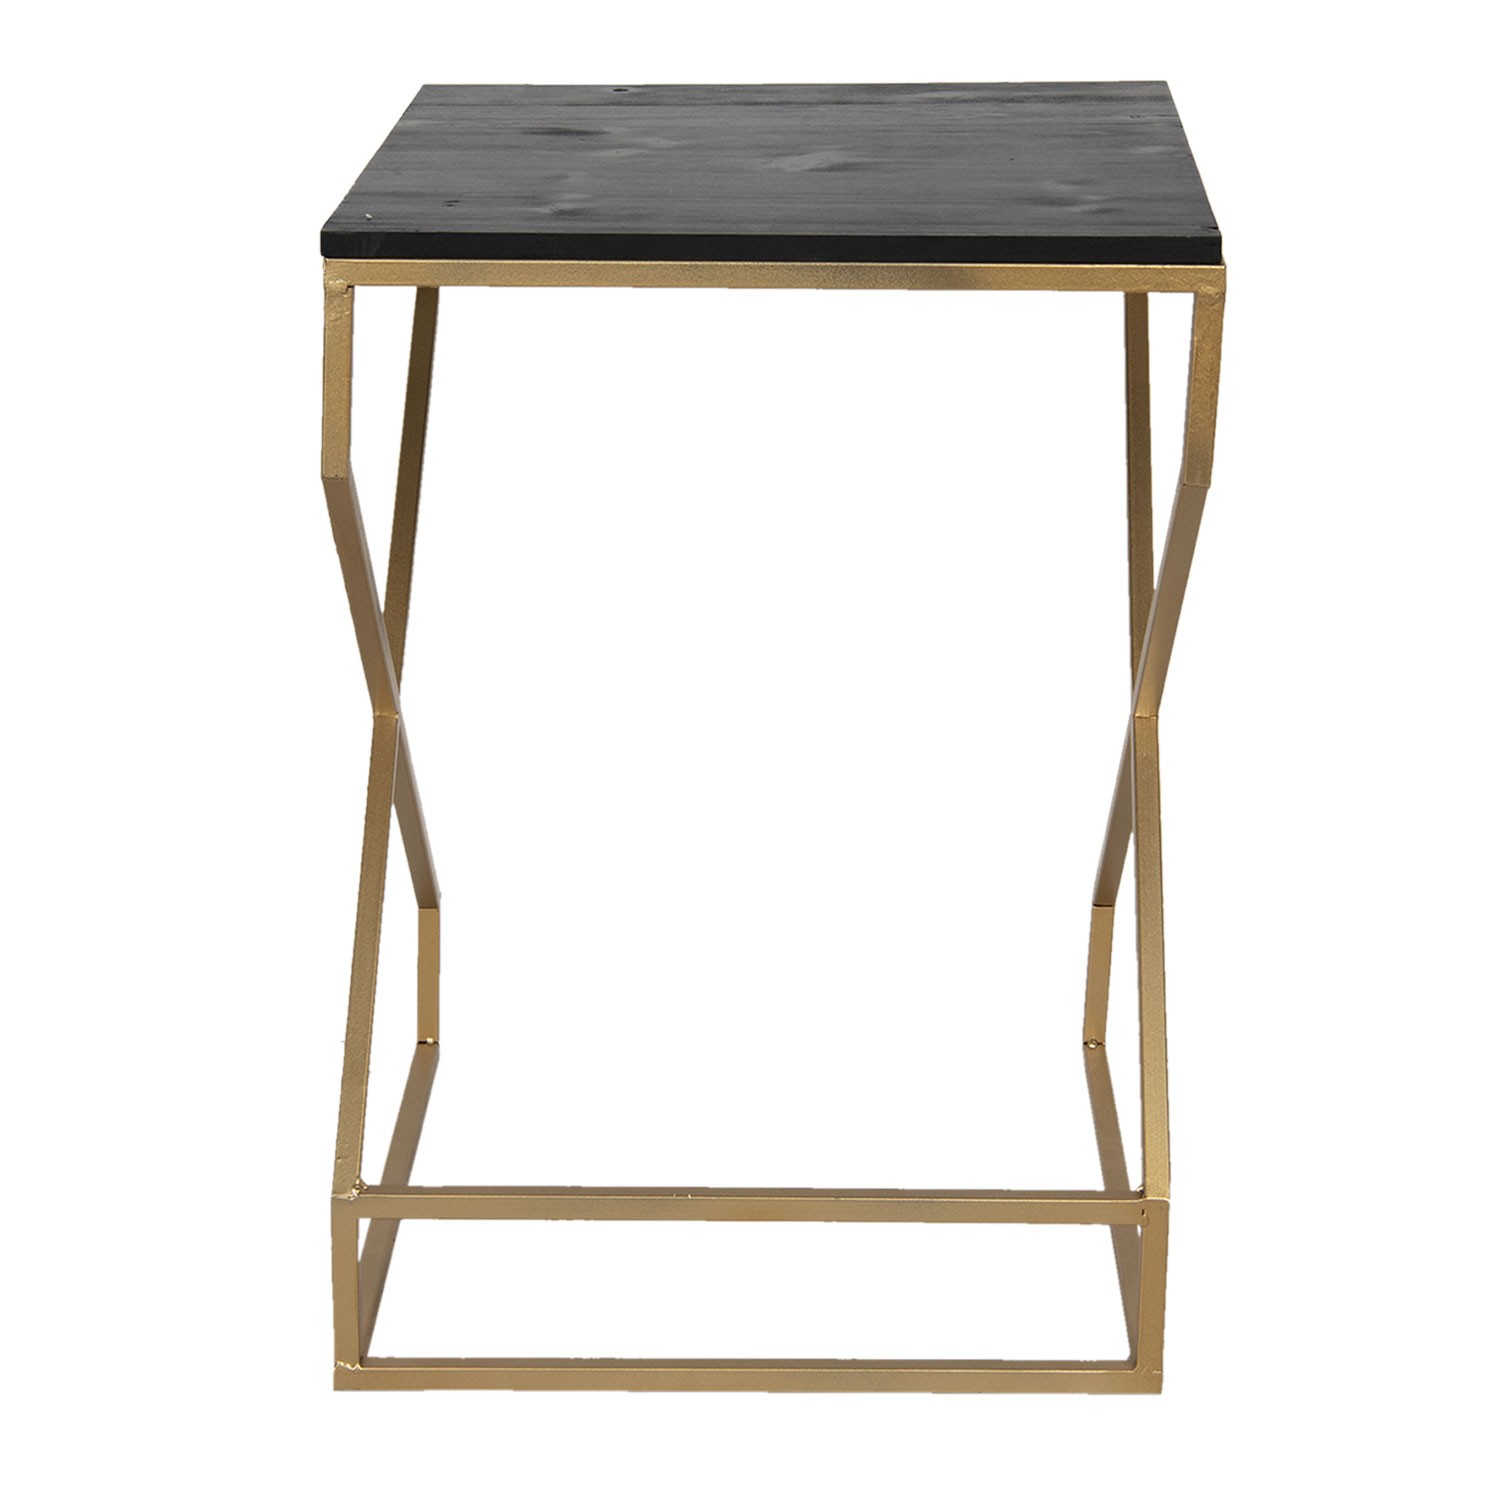 Zlatý kovový odkládací stolek Stefano s černou deskou - 40*40*55 cm Clayre & Eef